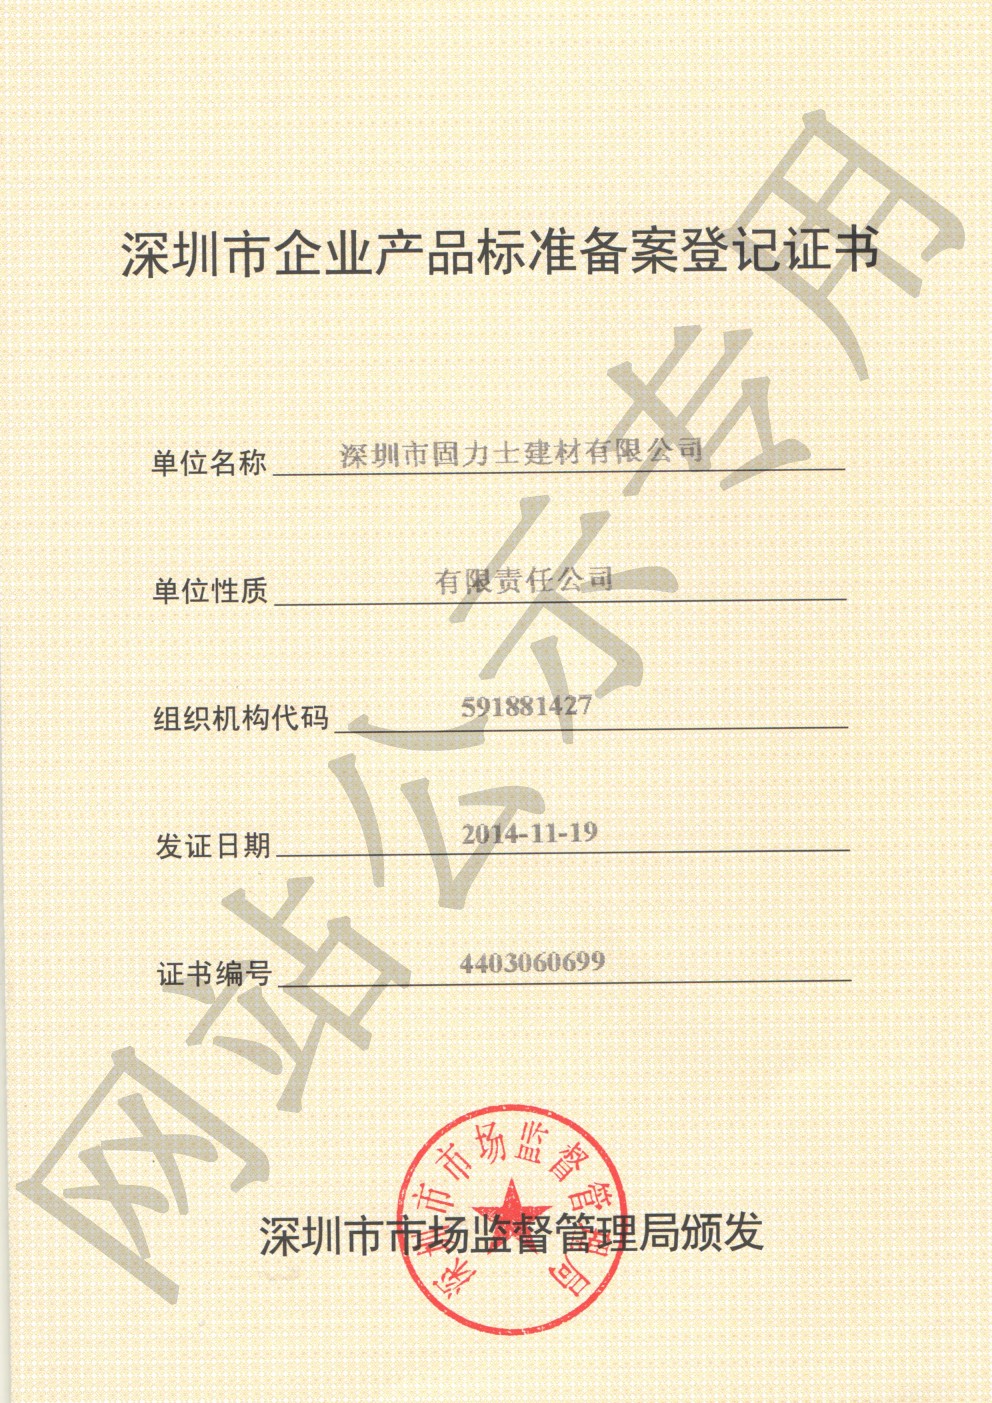 高坪企业产品标准登记证书